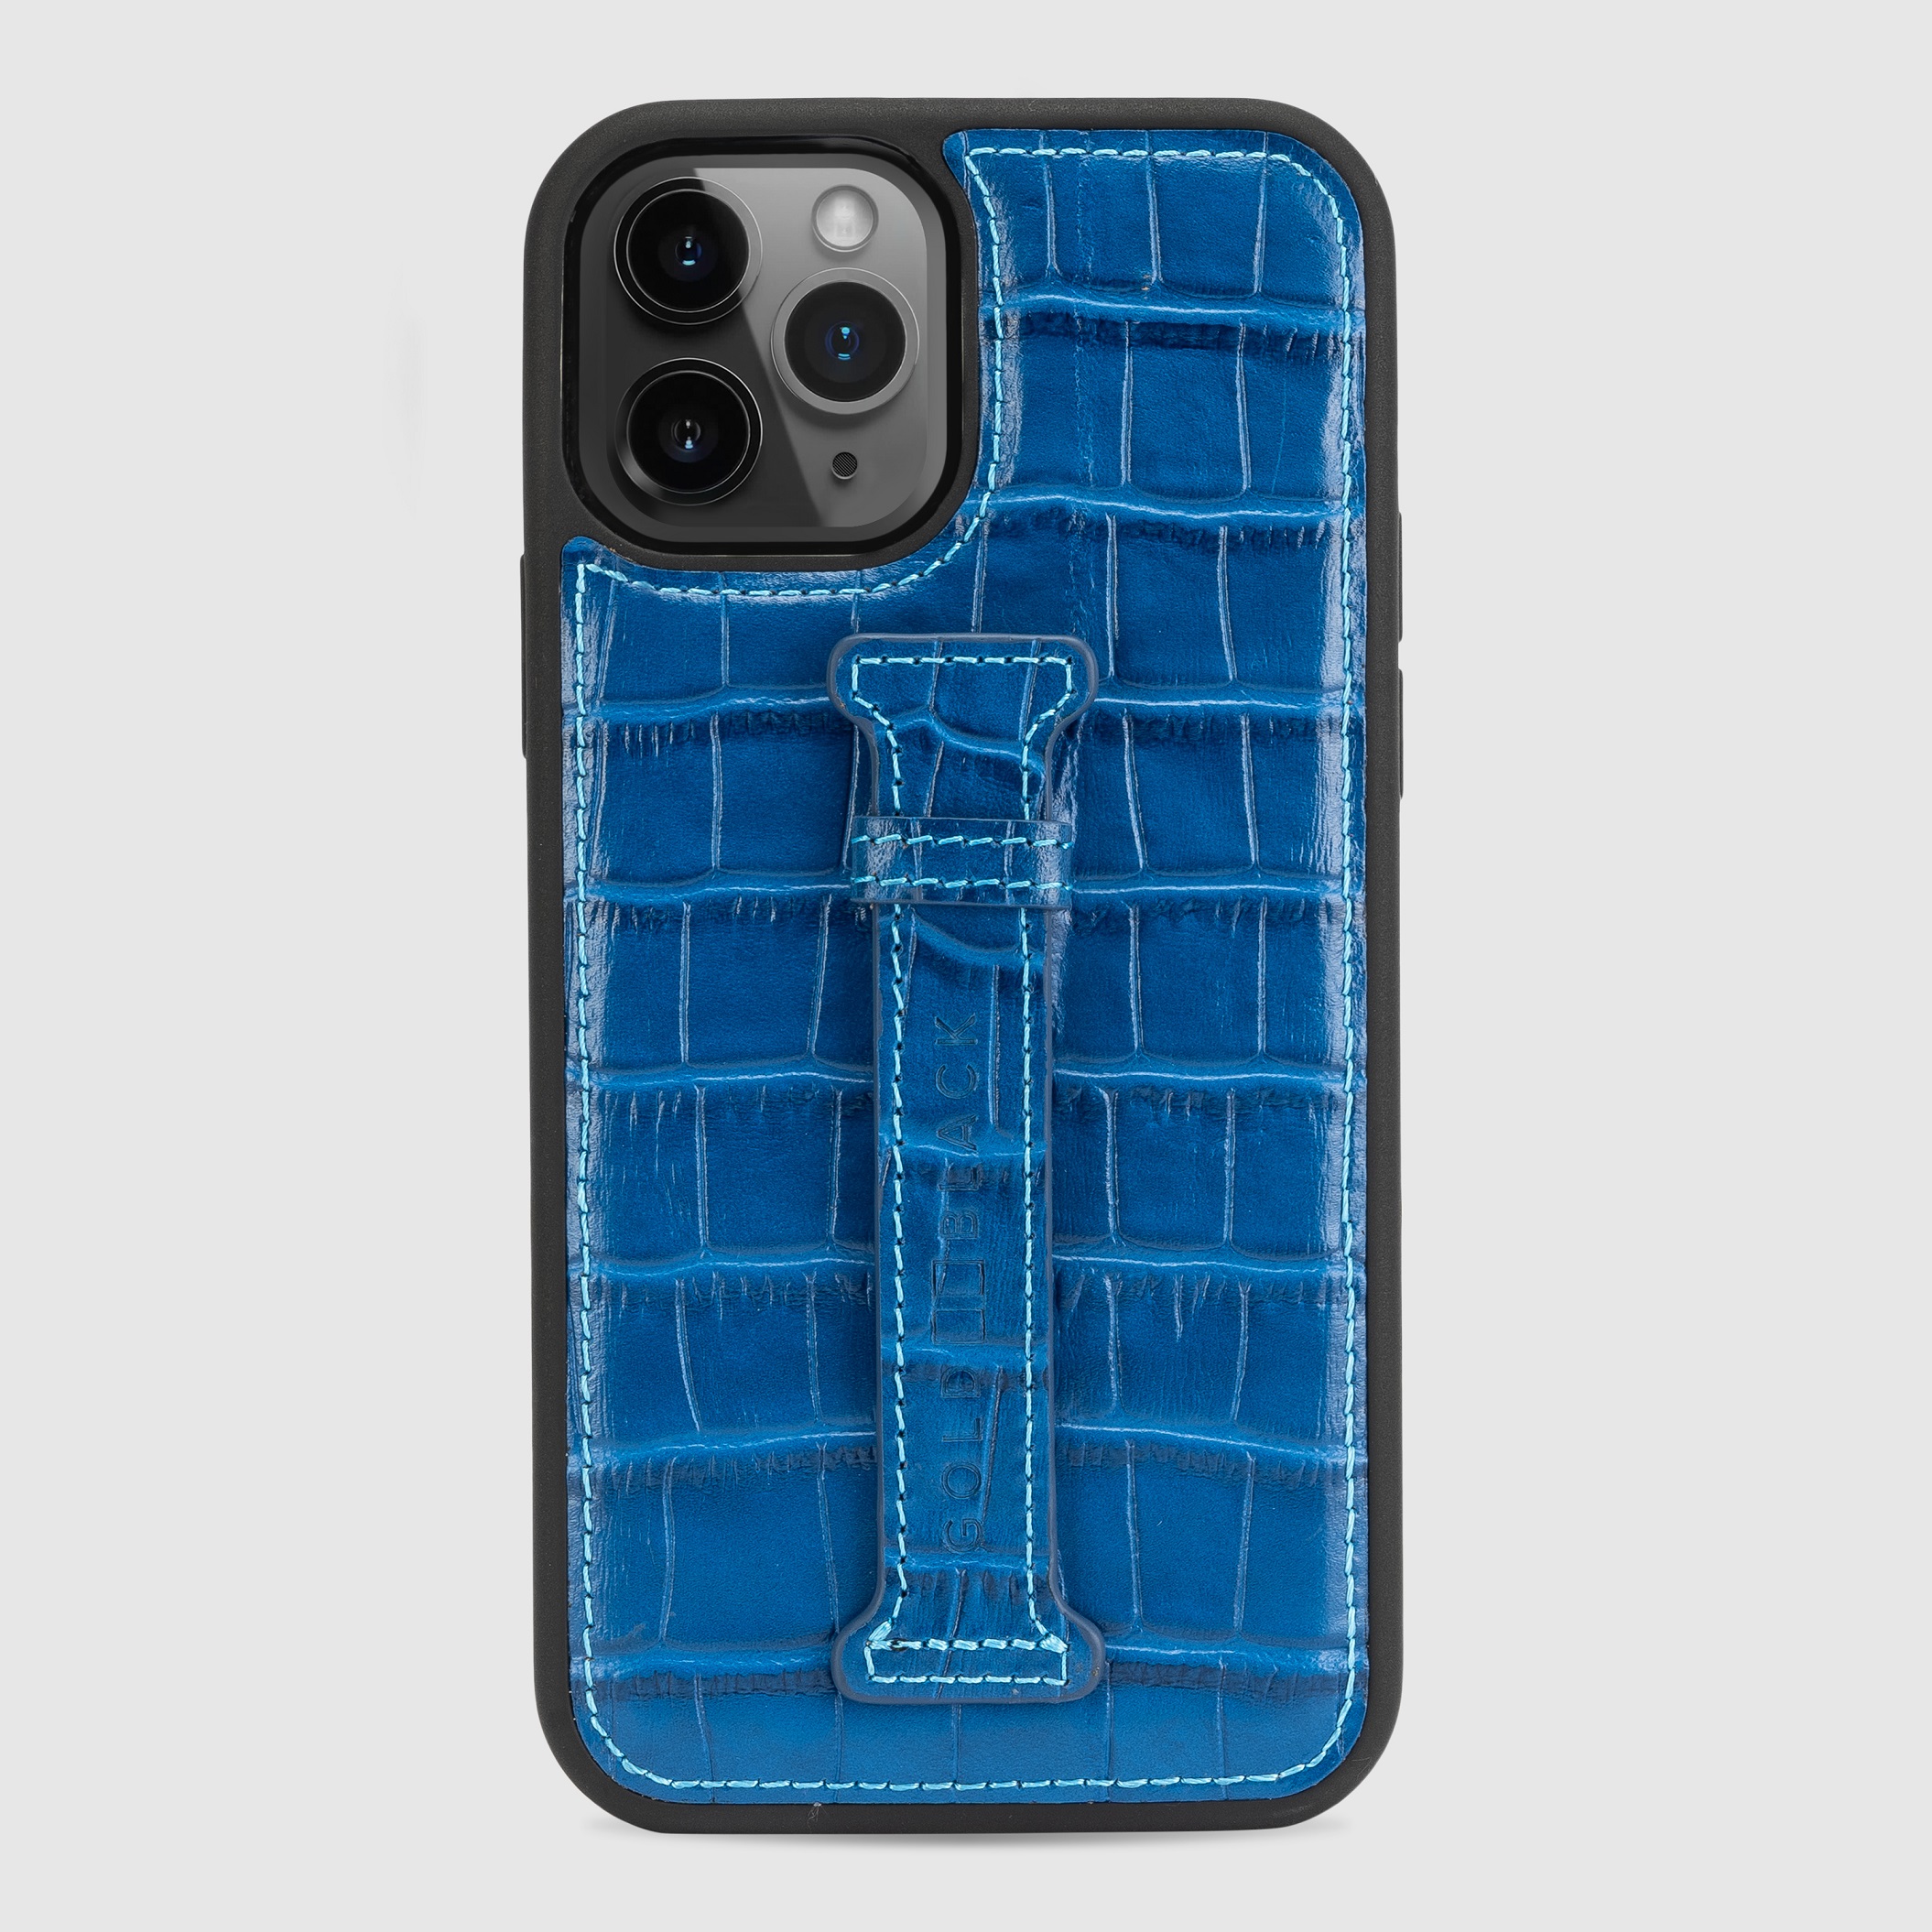 غطاء جوال ايفون 12 برو مع حامل الاصبع  (كروكو) - الازرق